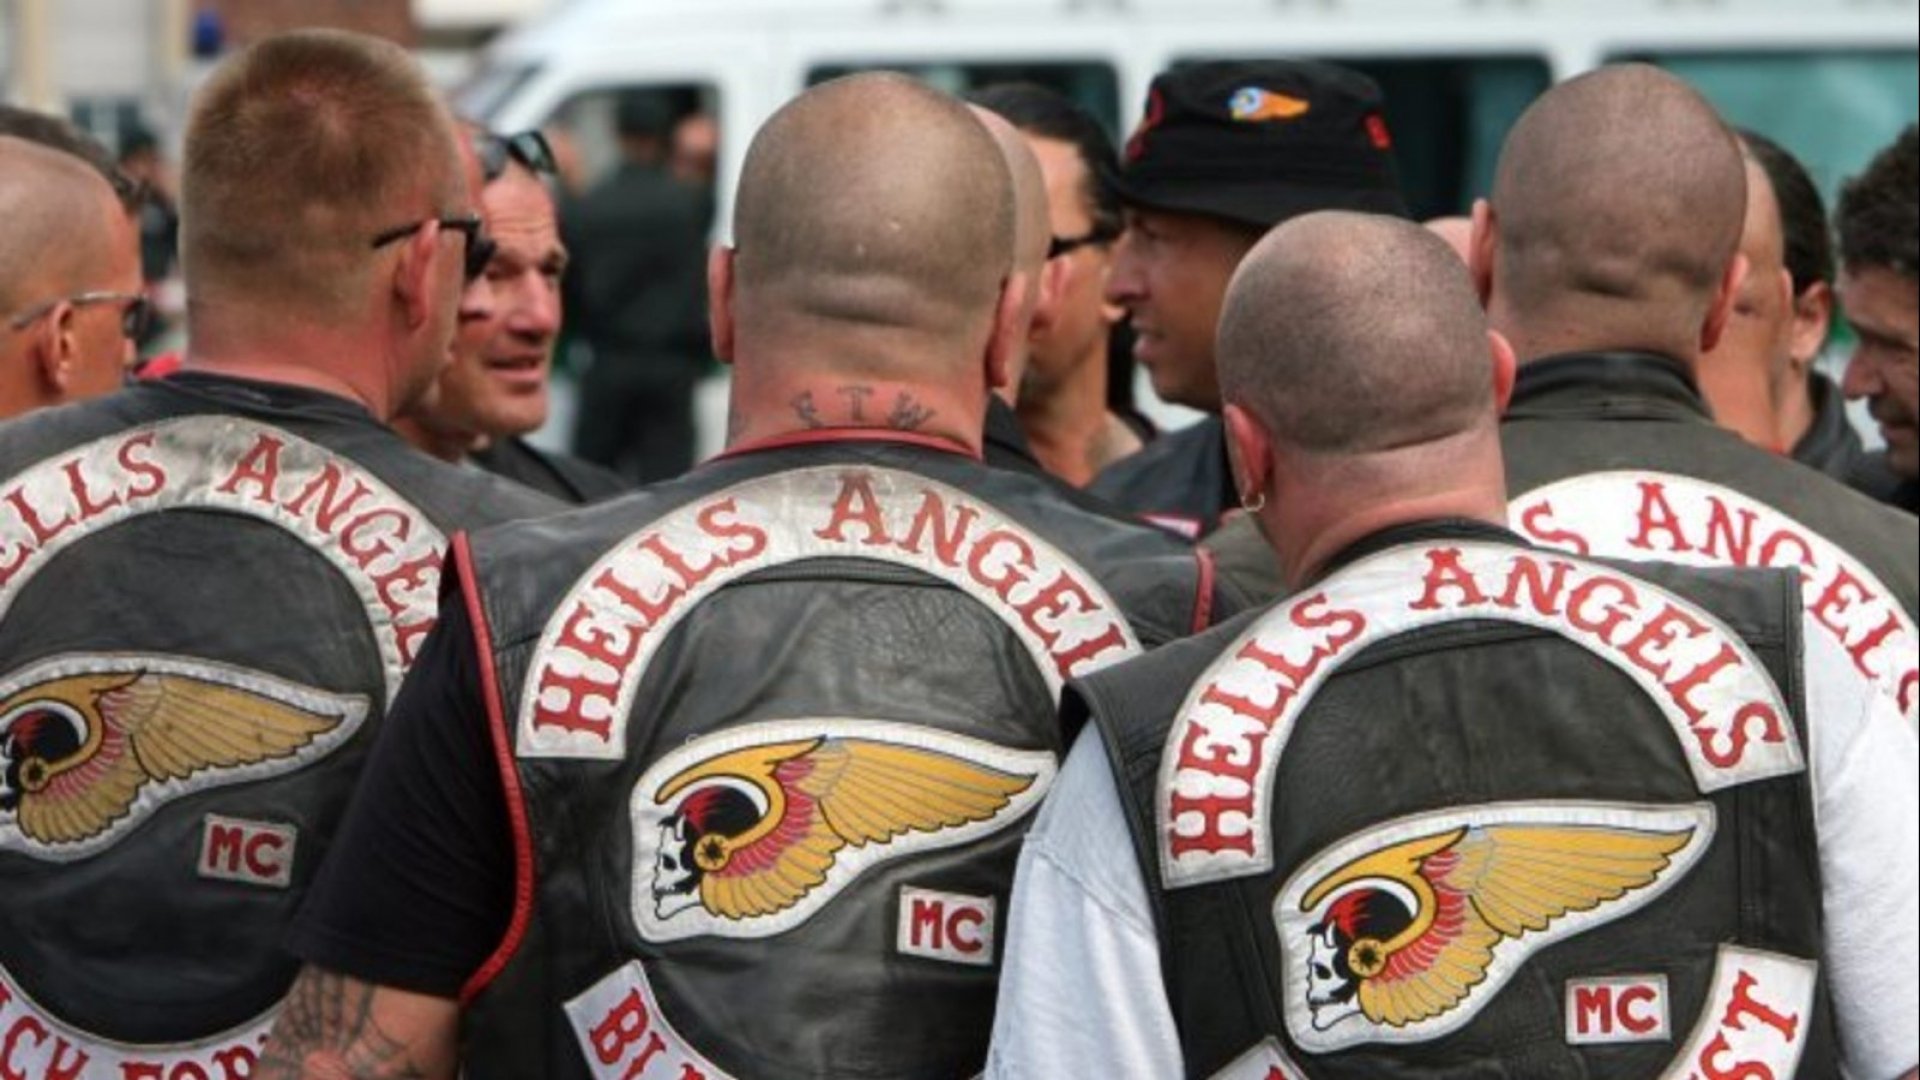 hells angels, Hamc, Biker, Hells, Angels, Motorbike, Motorcycle, Bike